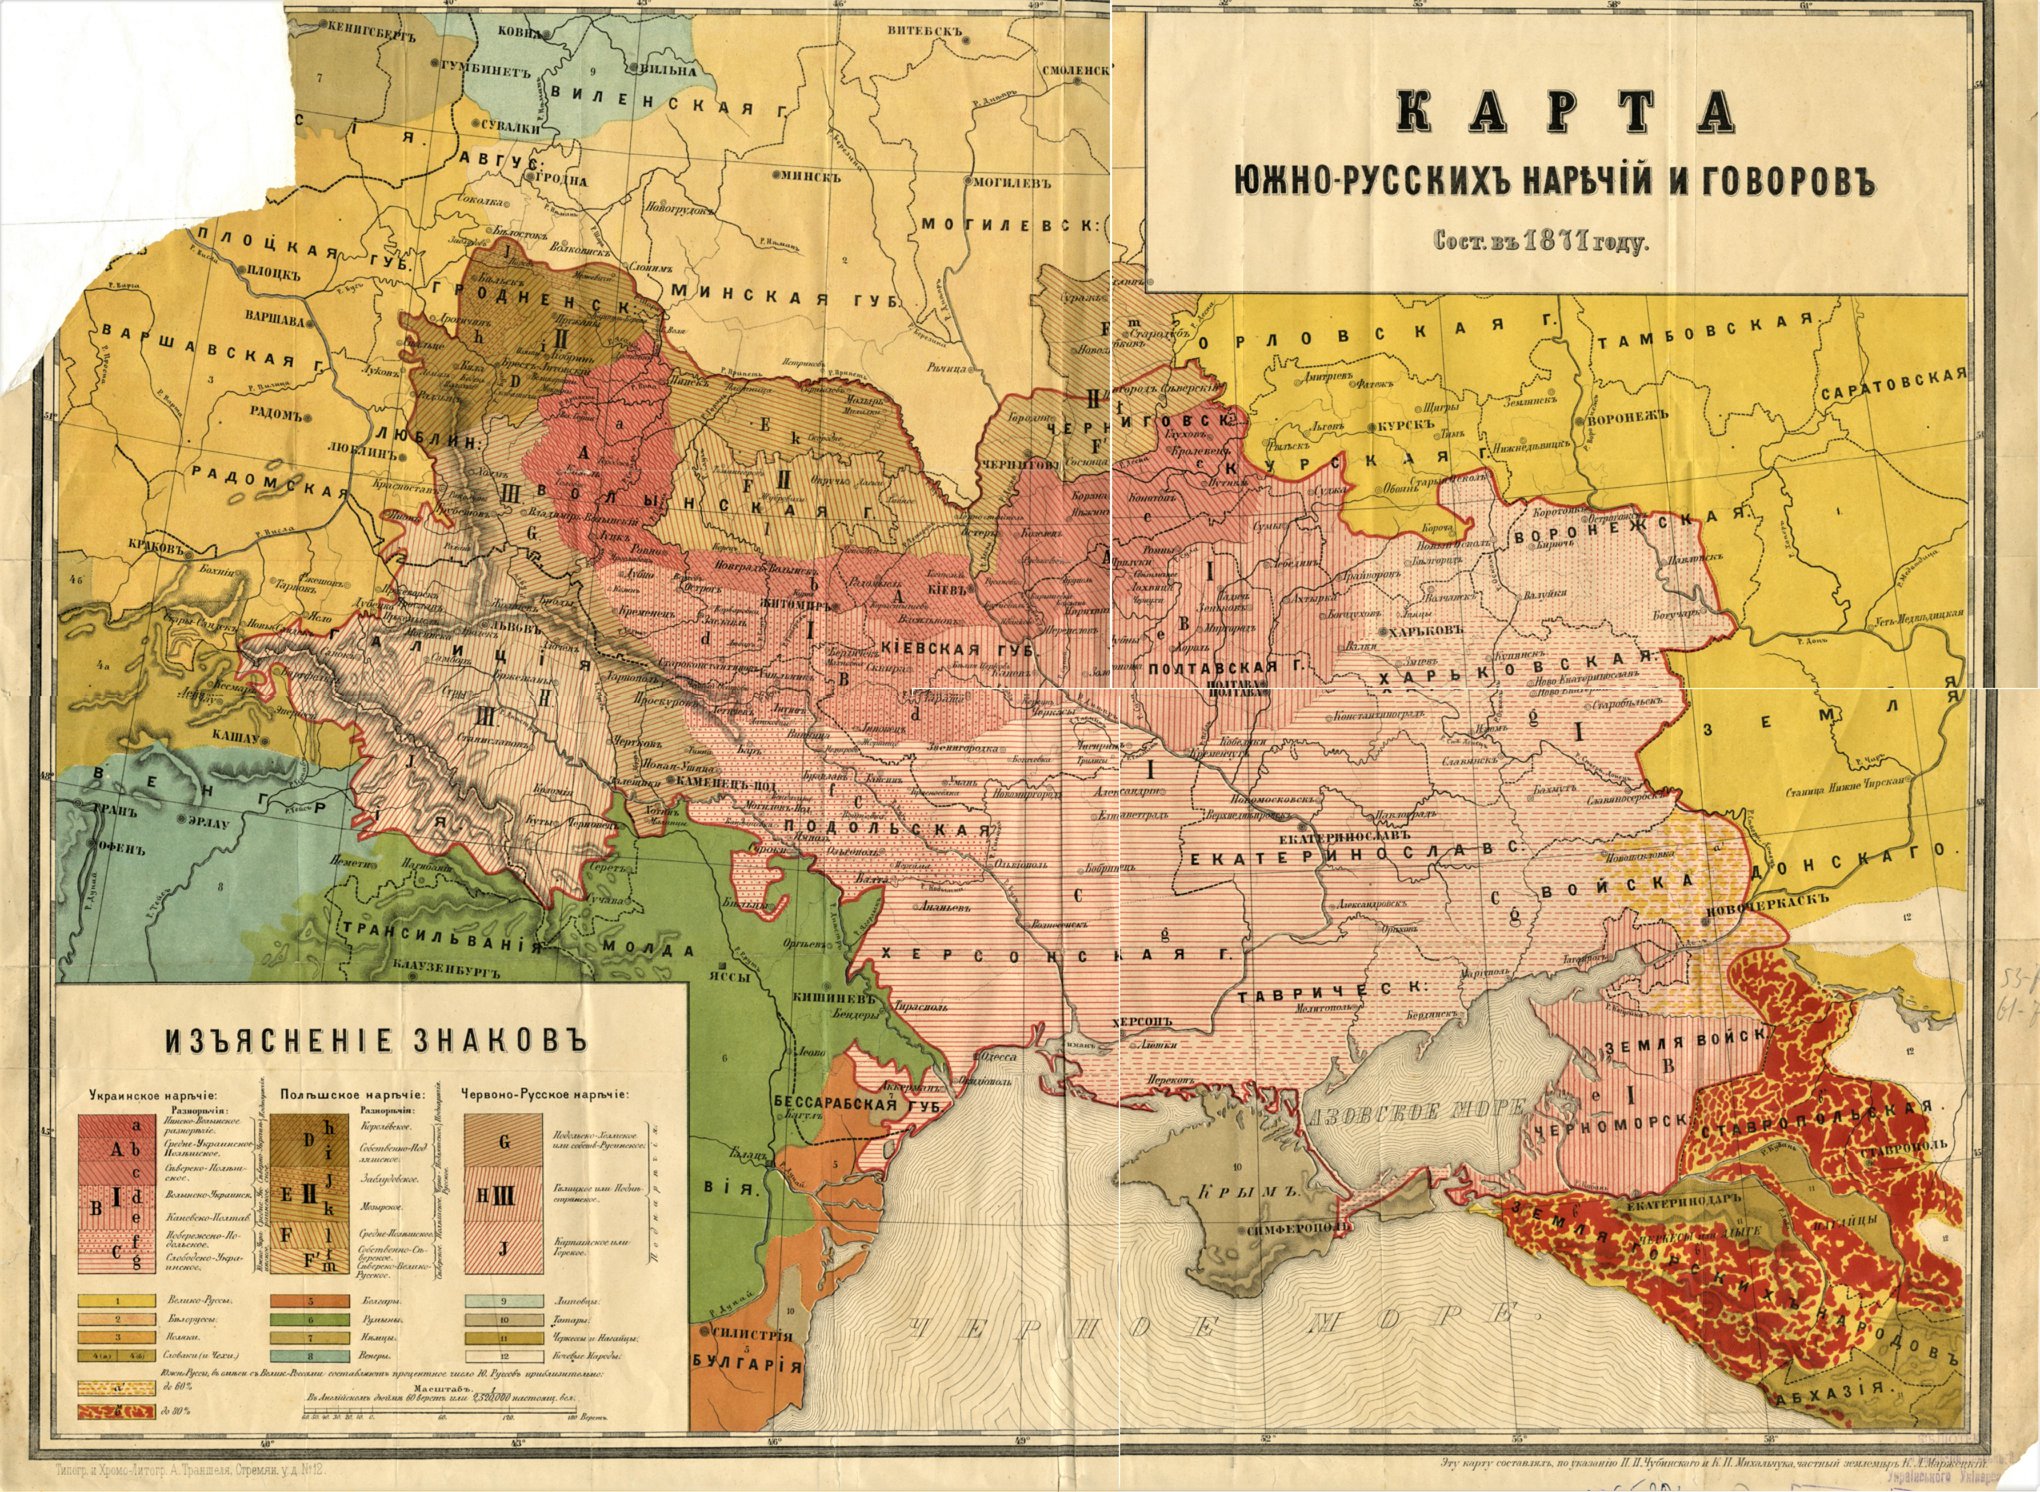 Карта южнорусских наречий и говоров П.Чубинского и К.Михальчука (1871).jpg